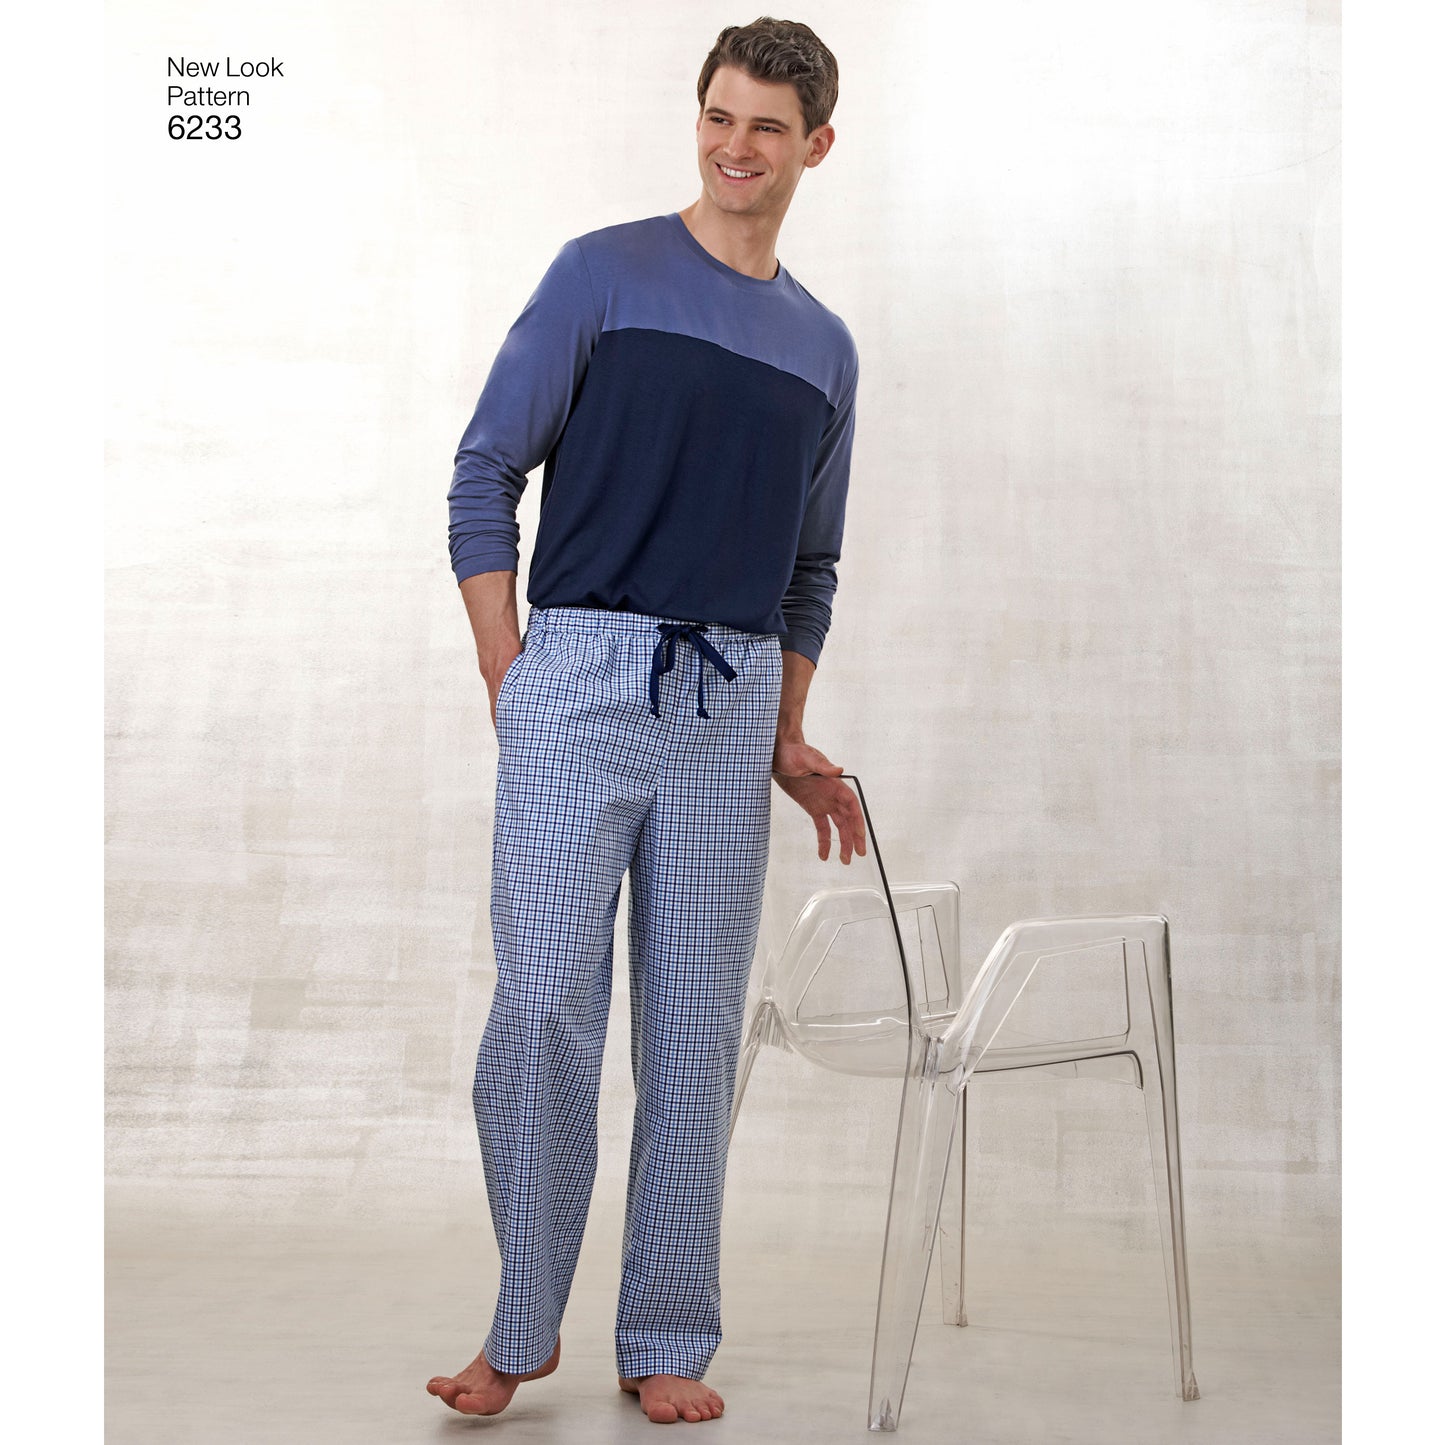 Symönster New Look 6233 - Top Byxa Pyjamas - Dam Herr | Bild 3